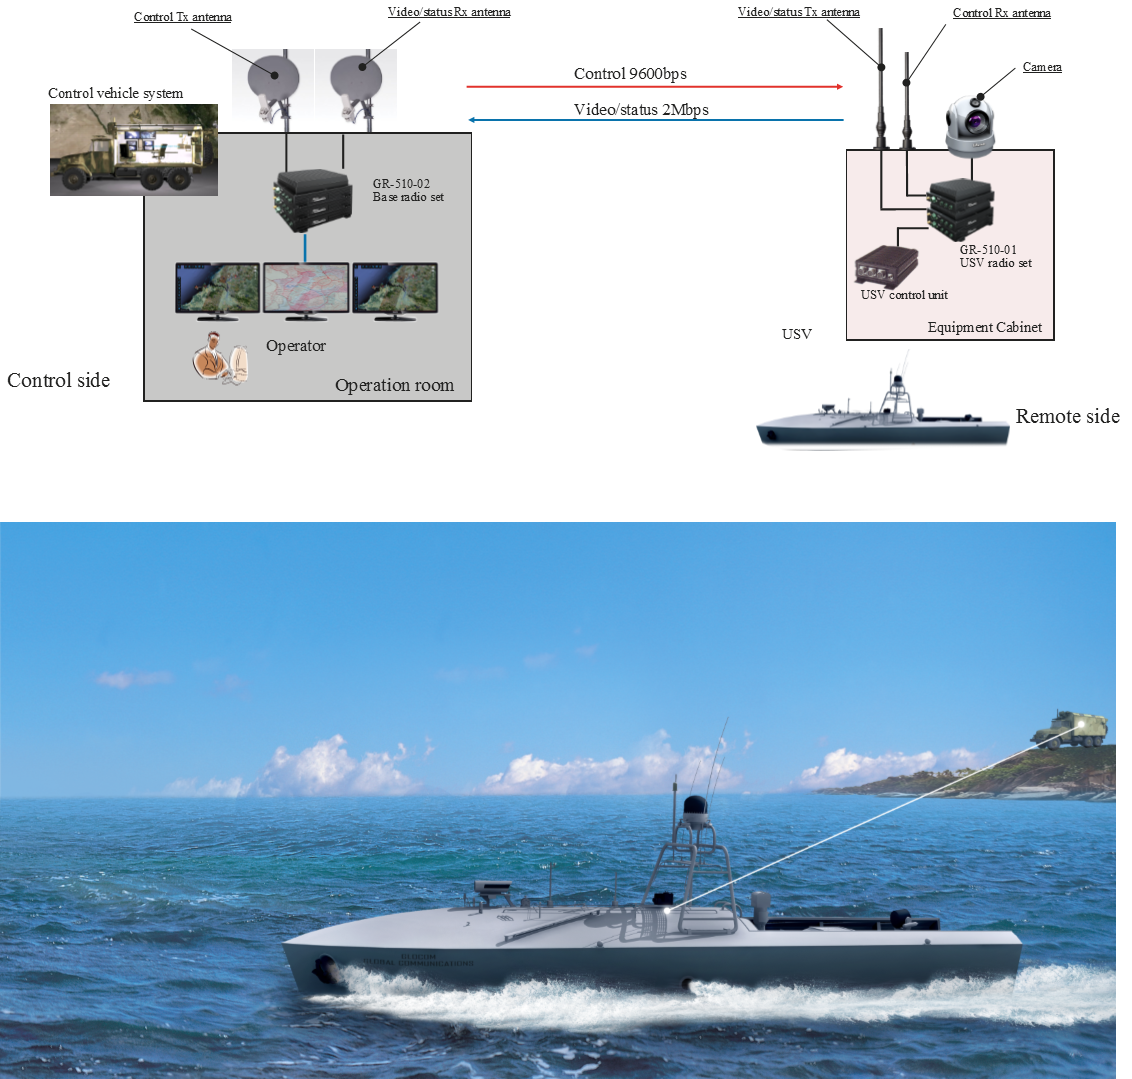 Unmanned surface vessel (USV) communication systems